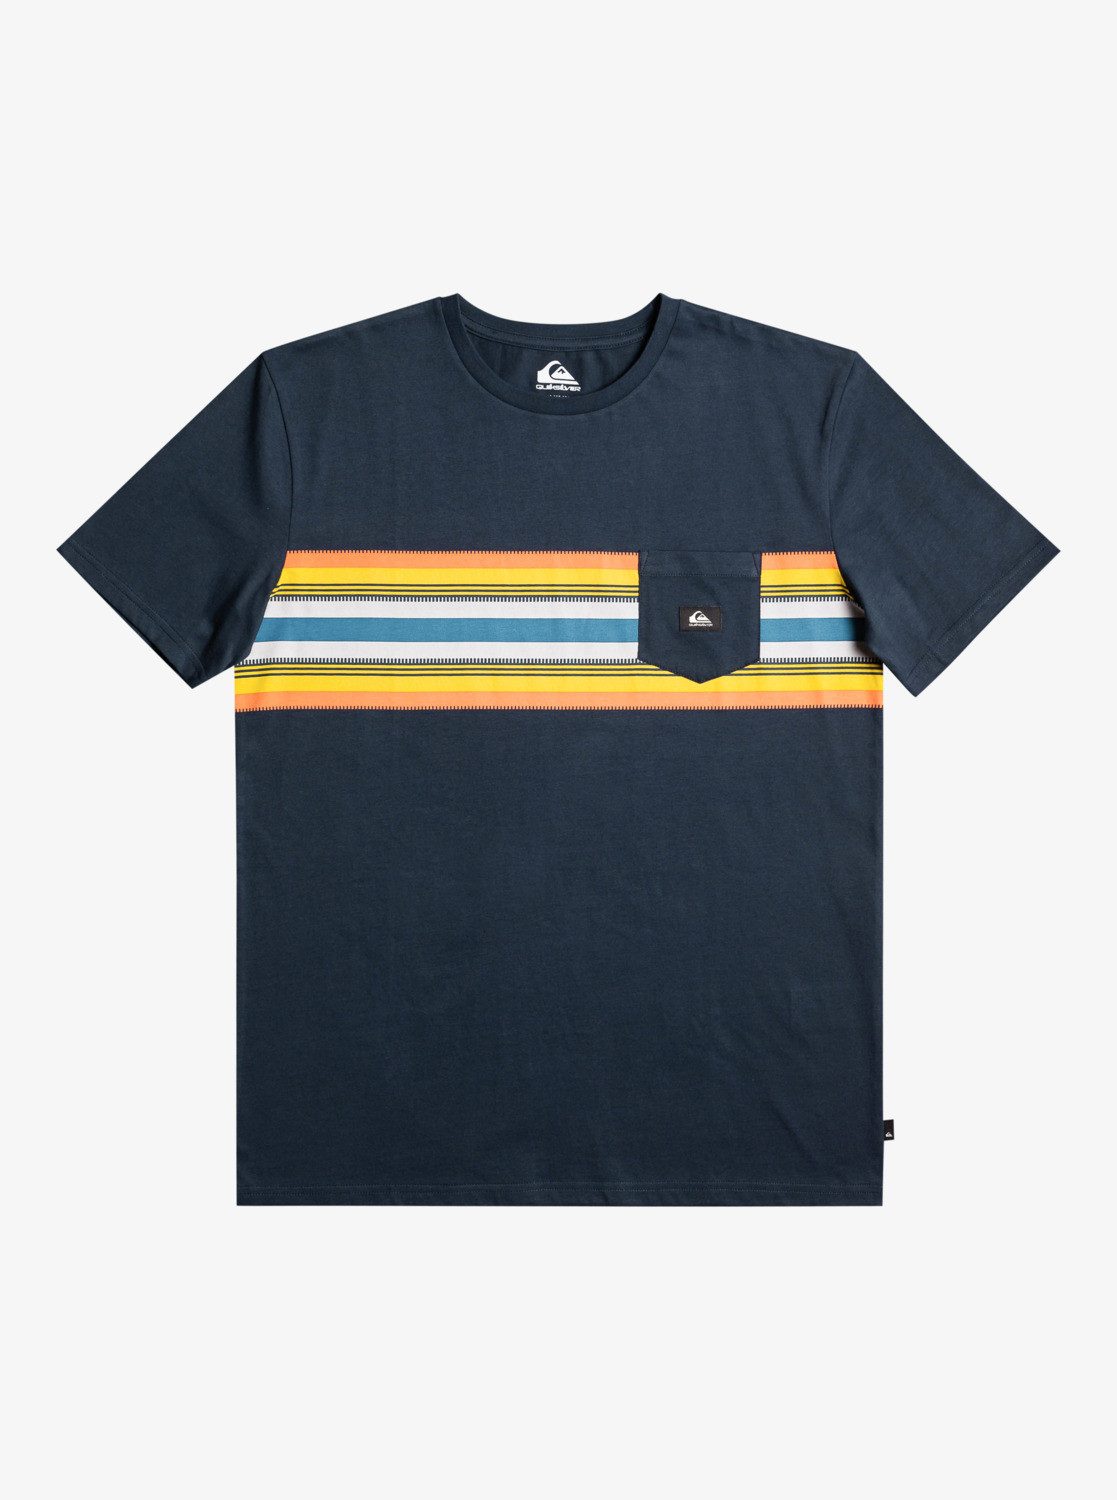 Stripe Navy Blazer Surfadelica T-Shirt Quiksilver